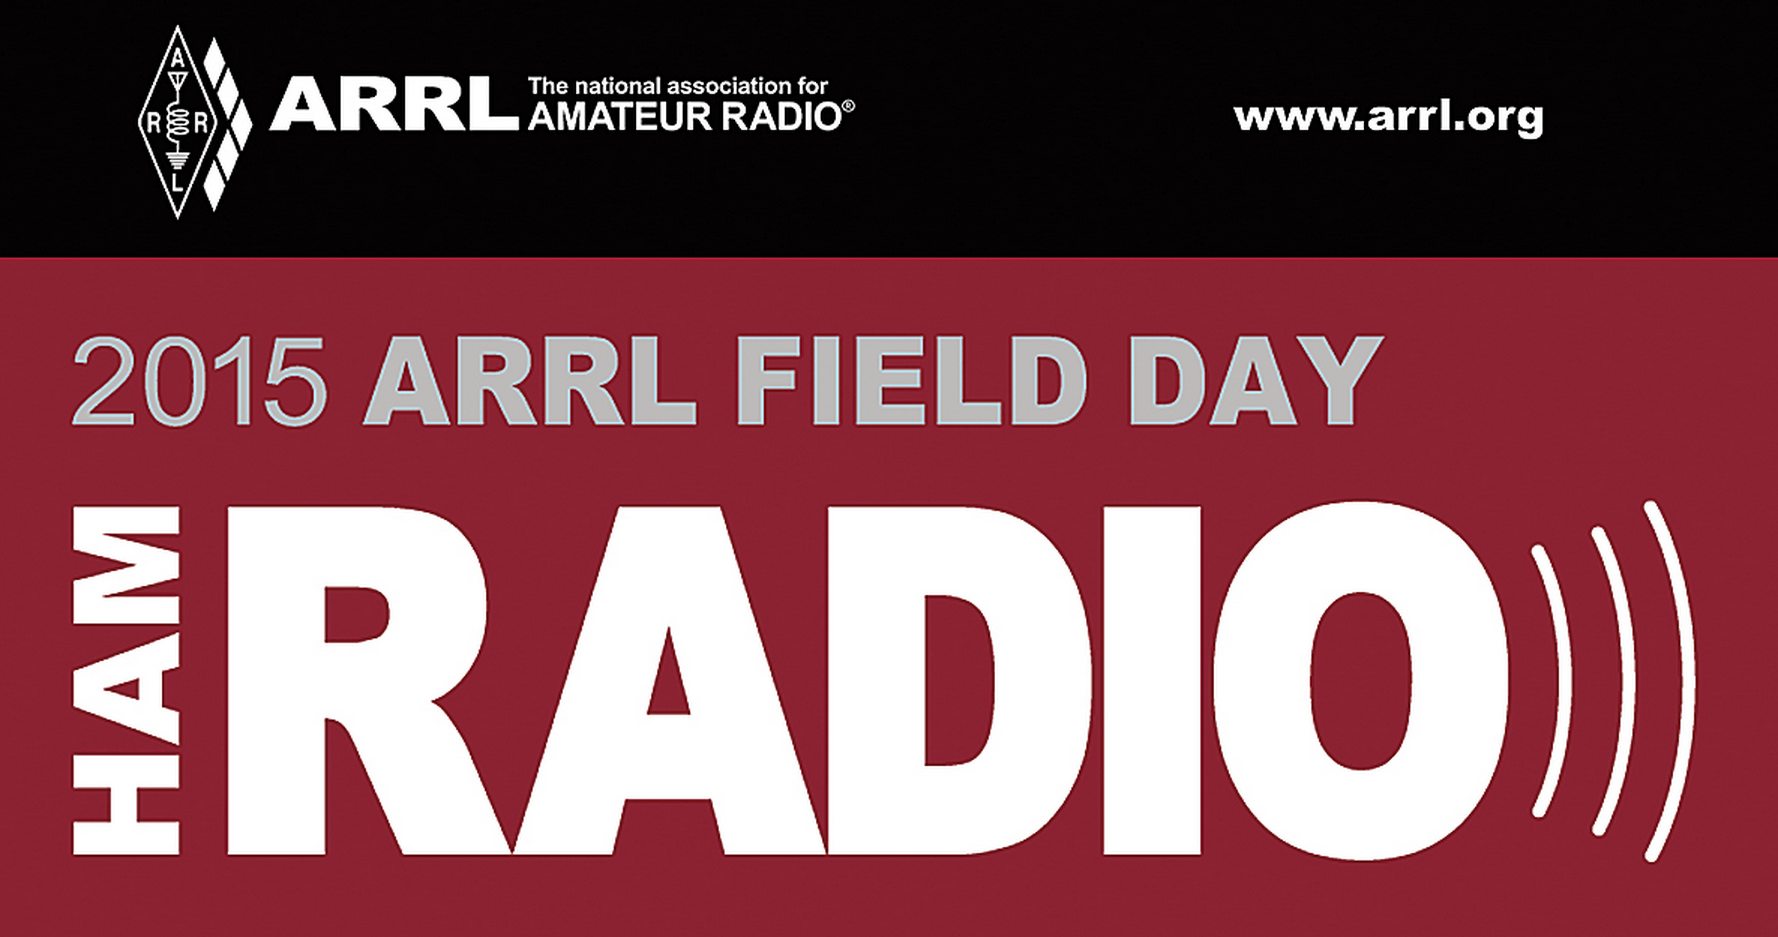 ARRL Logo